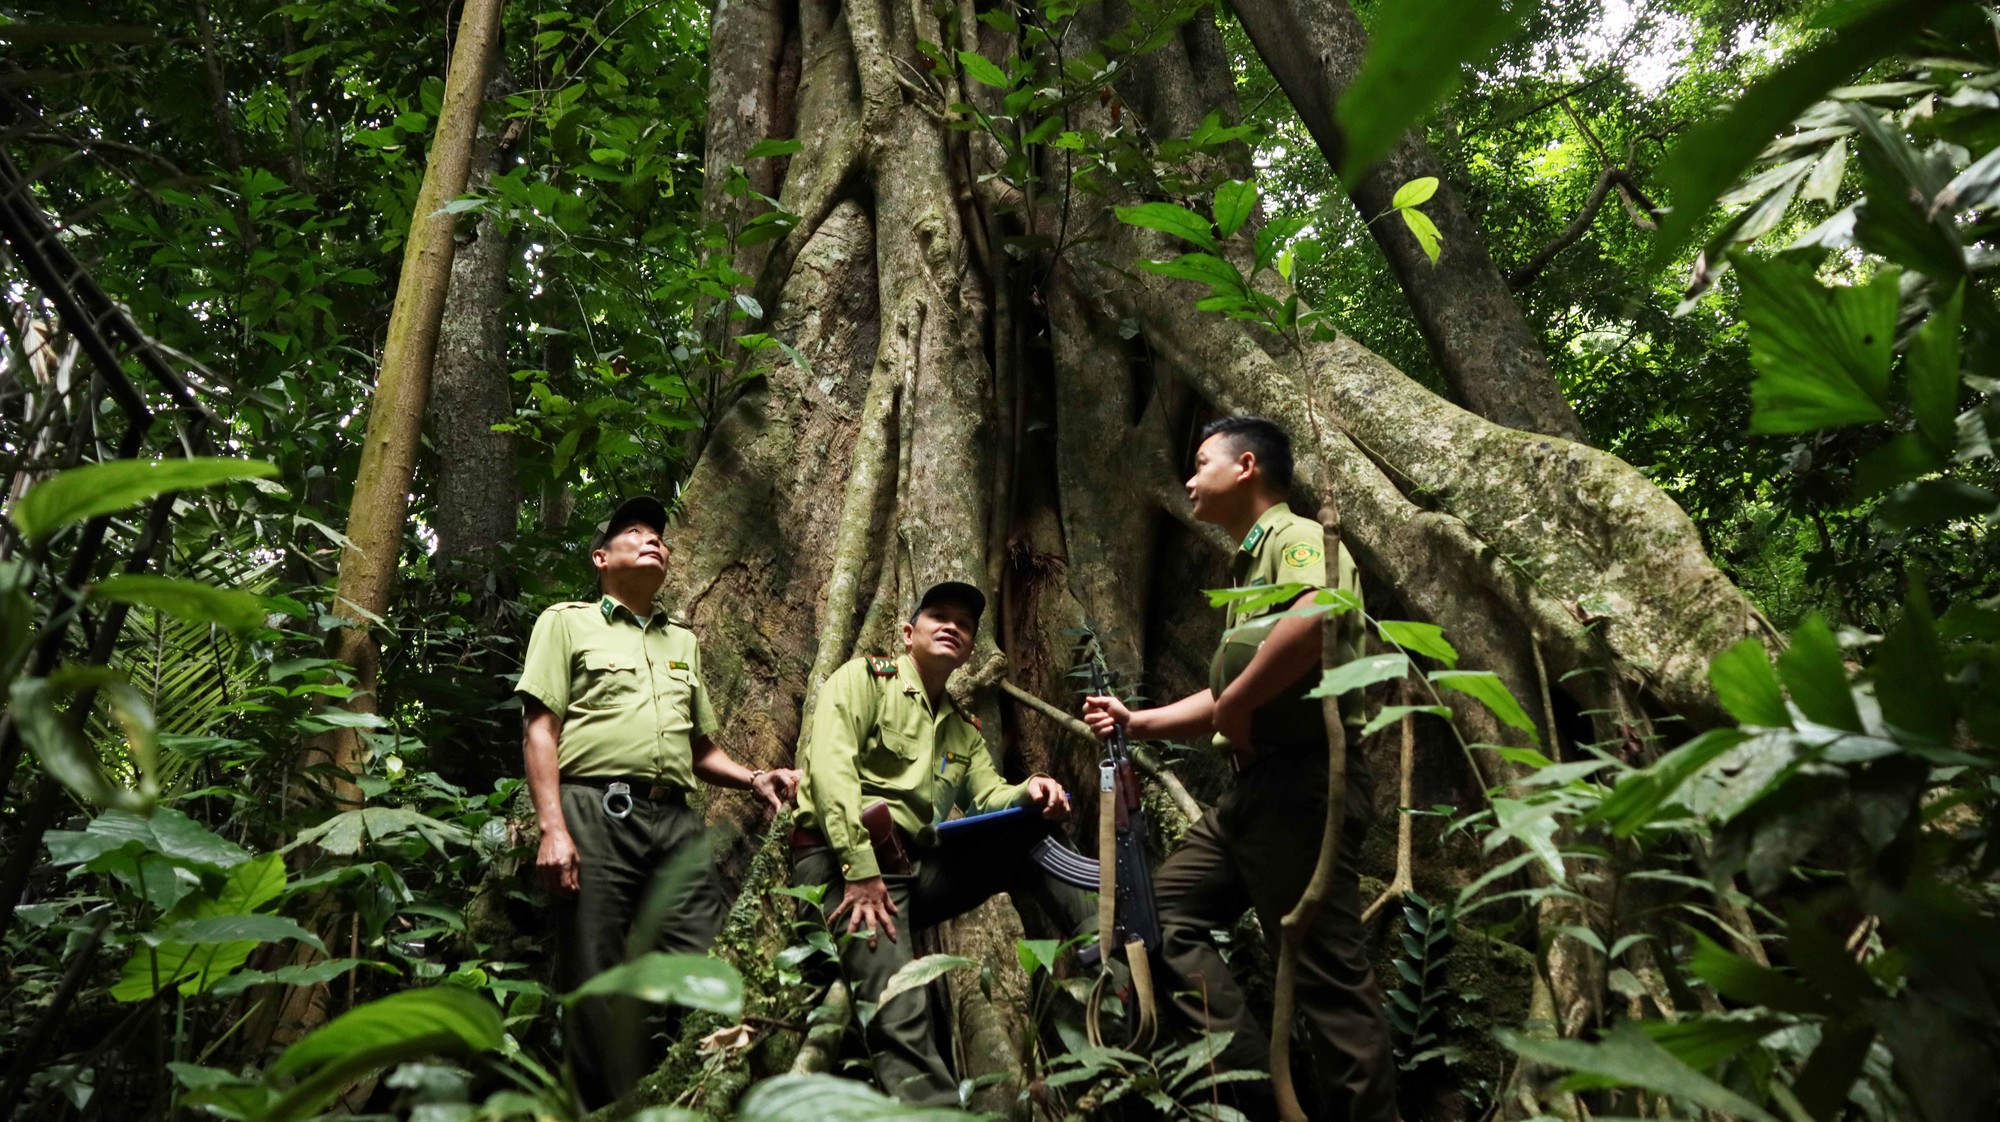 Vườn Quốc gia hơn 60 năm tuổi tại Việt Nam 5 lần liên tiếp nhận giải “Oscar của ngành Du lịch” châu Á - Ảnh 6.